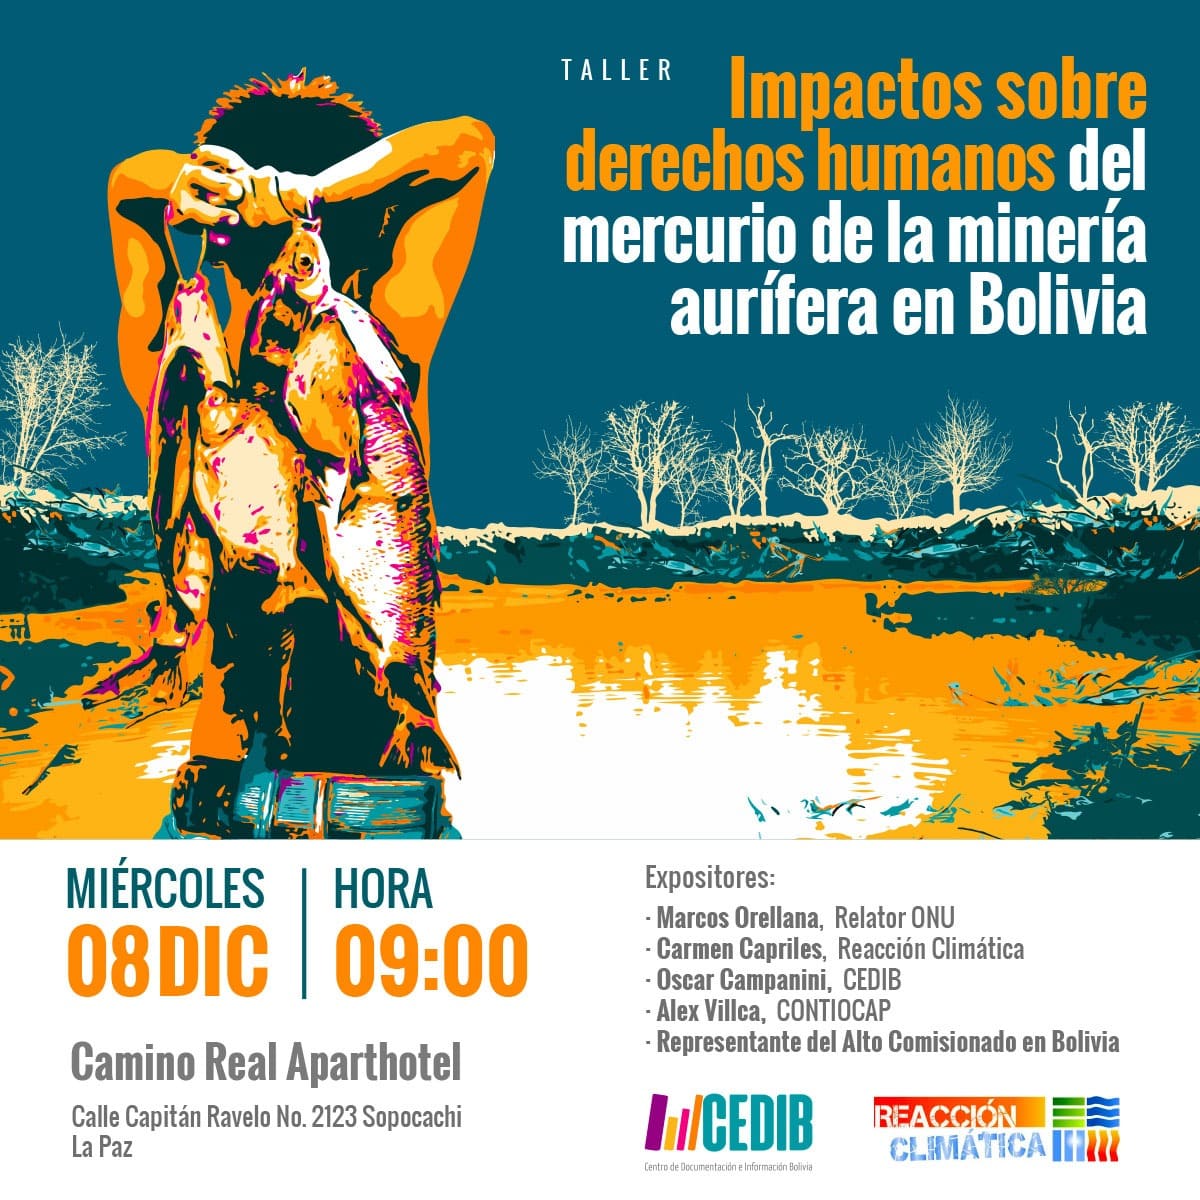 Mercurio para la minería del oro y vulneraciones al medioambiente y los derechos humanos en Bolivia